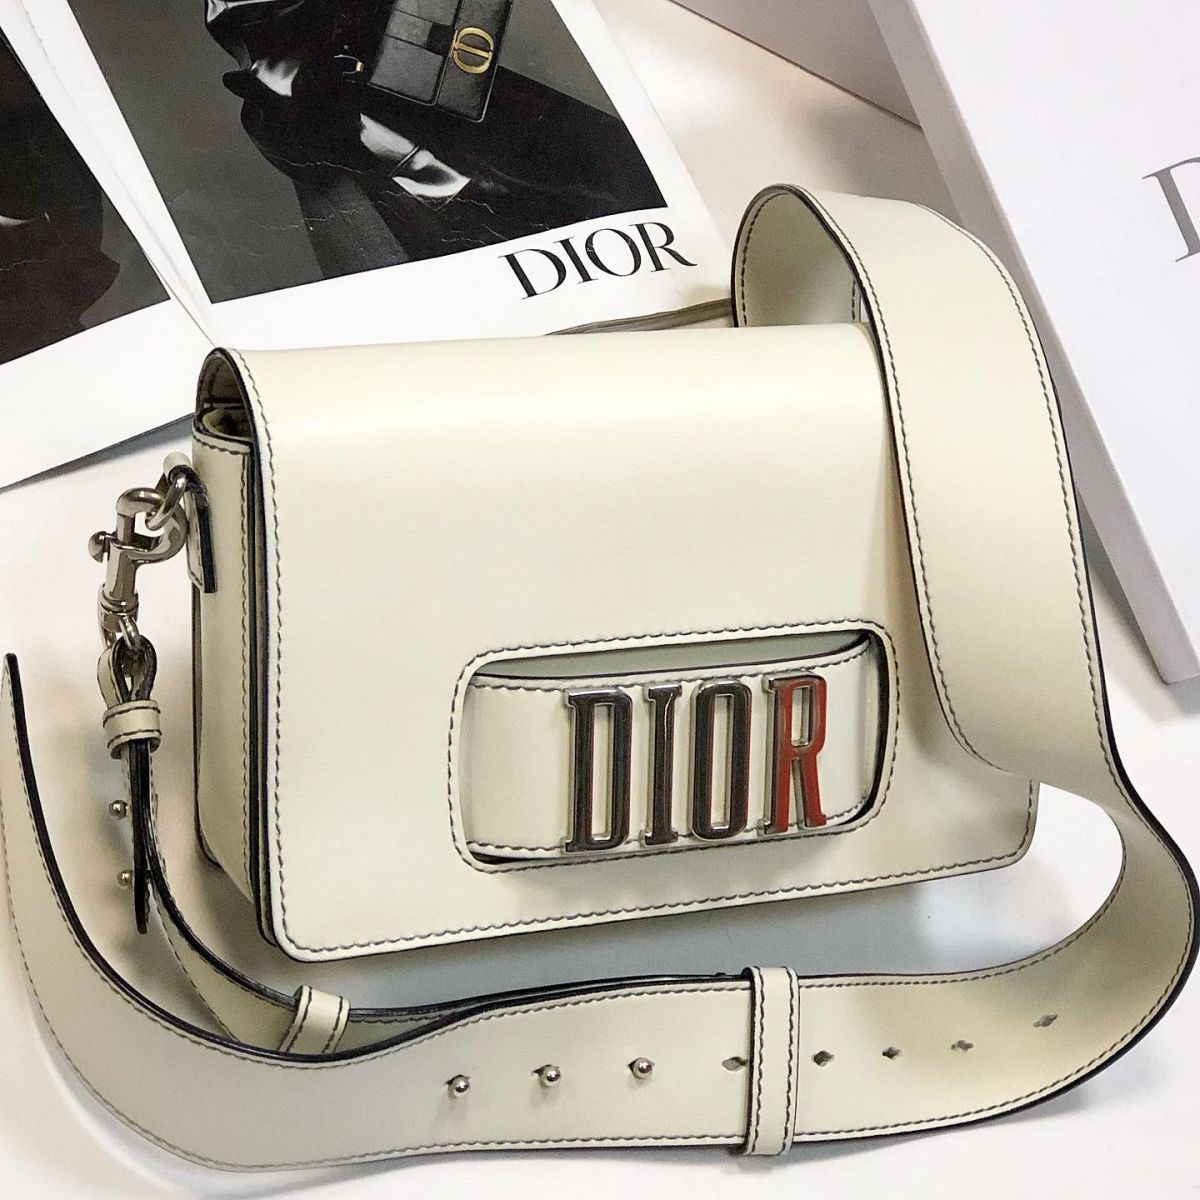 Сумка Christian Dior  размер 25/17 цена 123 080 руб 